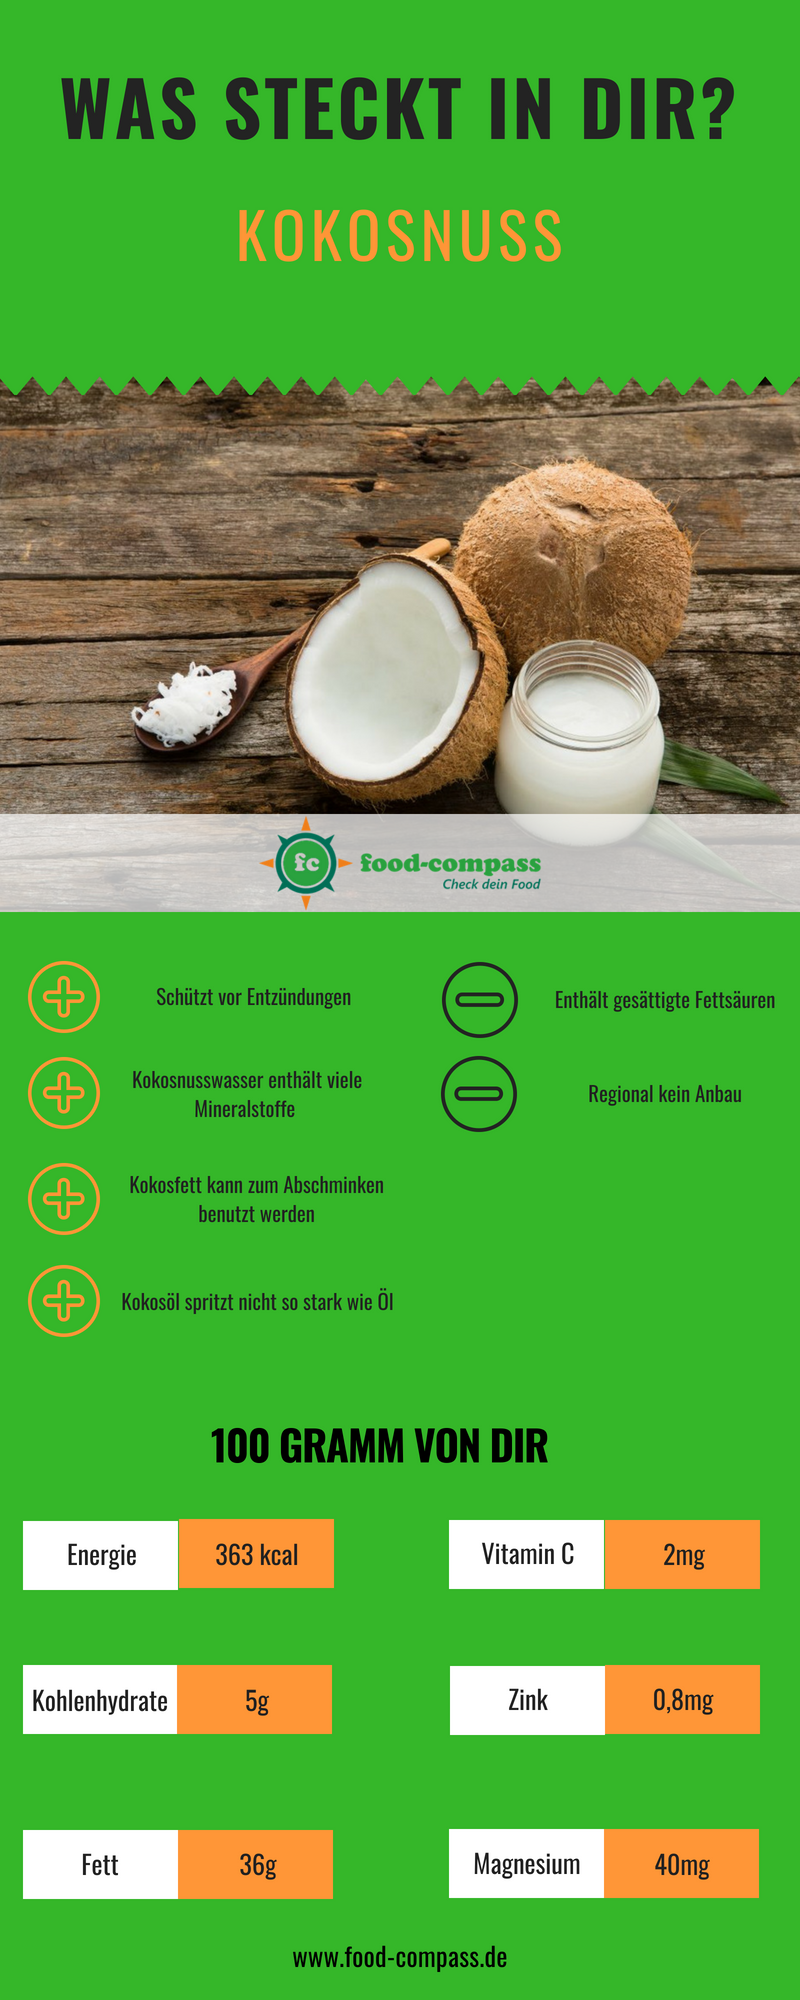 Kokosnuss und deren Nährstoffe